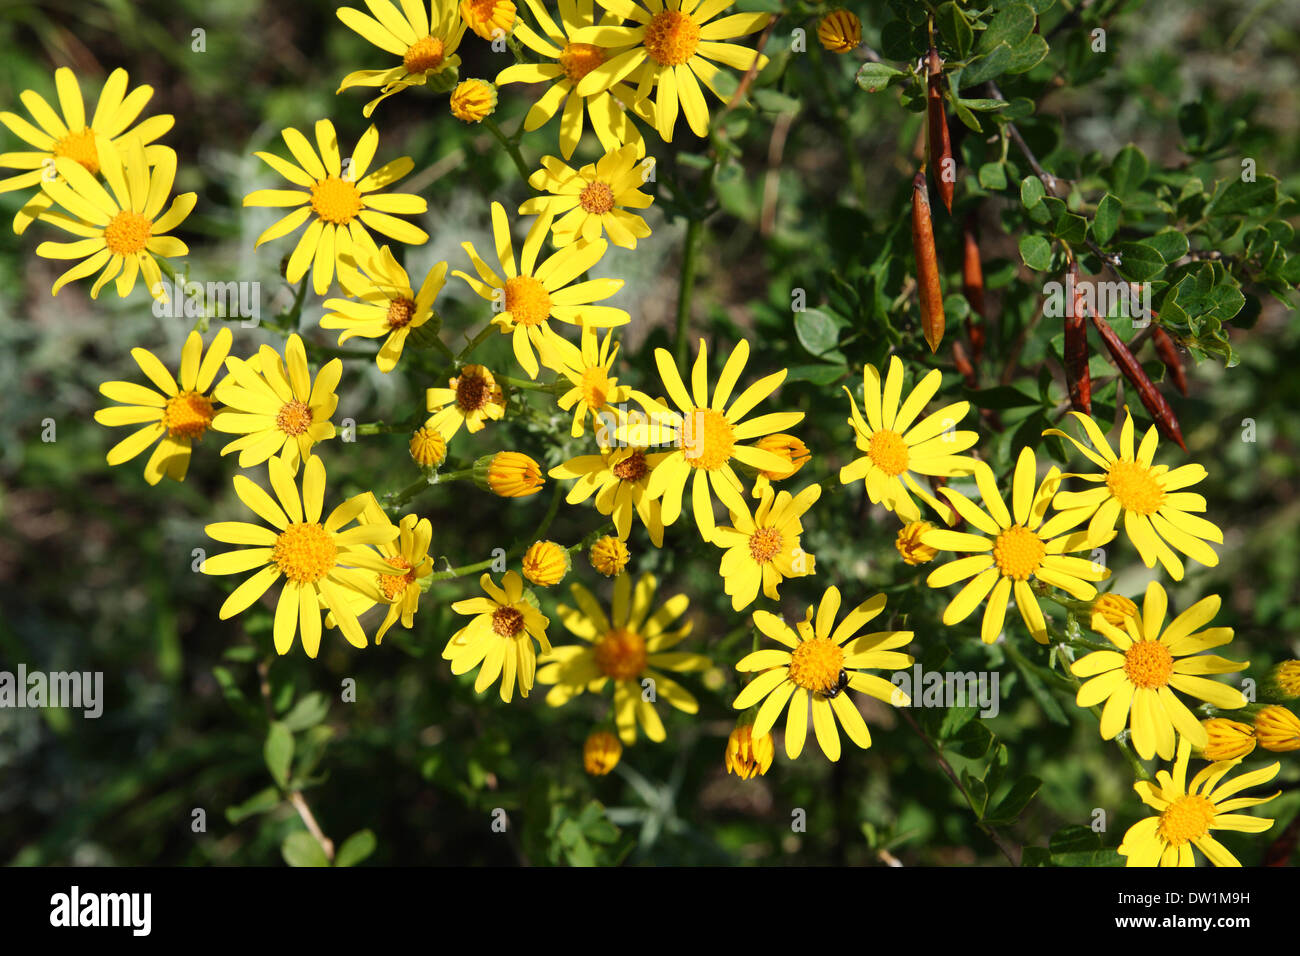 yellow doronicum flowers Stock Photo